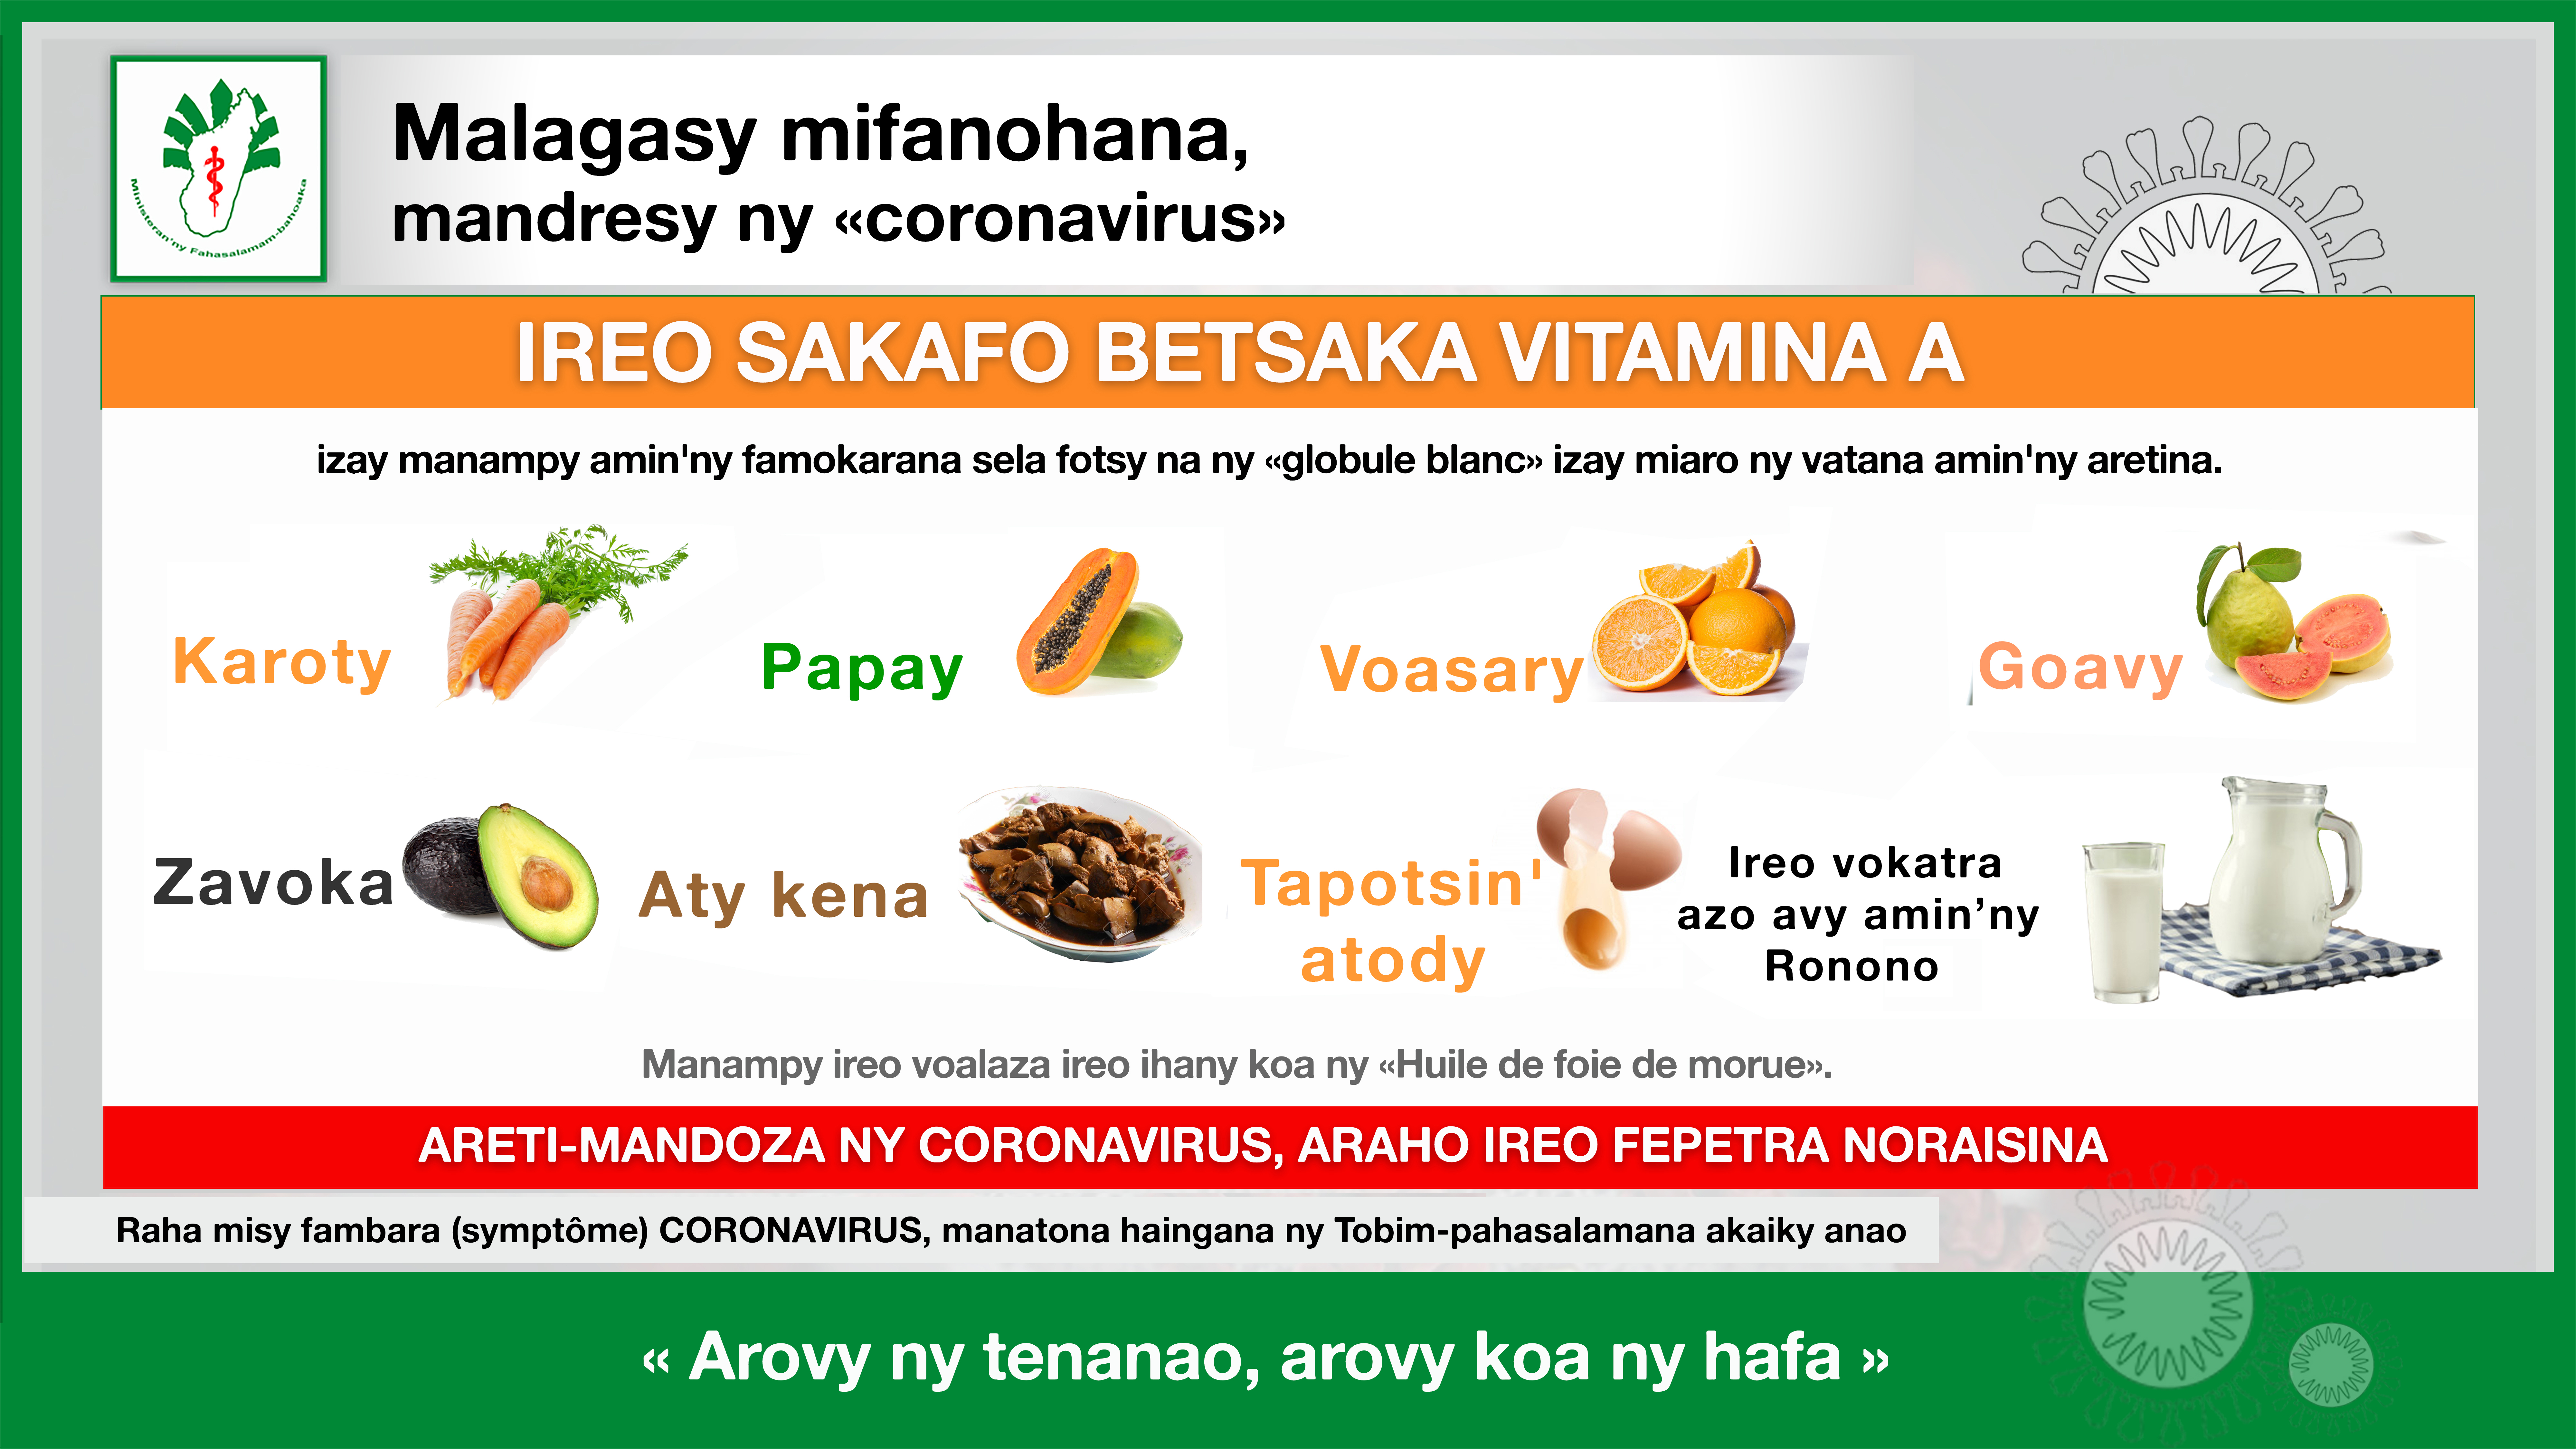 Ireo sakafo betsaka Vitamina A izay manampy amin’ny famokarana sela fotsy (Globule blanc) izay miaro ny vatana amin’ny aretina